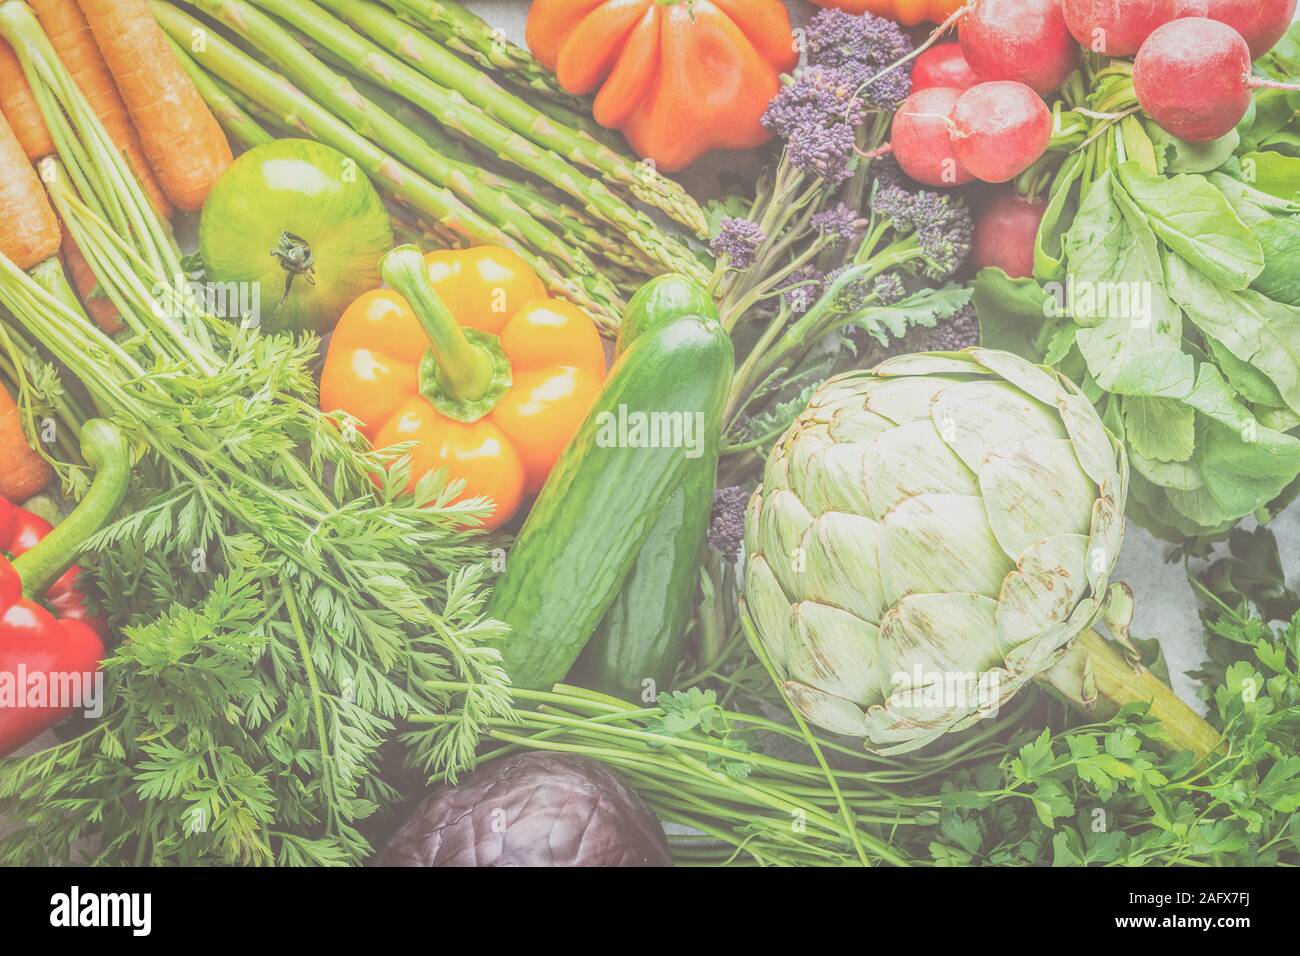 Gemüse Hintergrund, Kohl Karotten Pfeffer Fenchel Broccoli Spargel Tomaten Salat artichocke, getönt, Ansicht von oben, selektiver Fokus Stockfoto